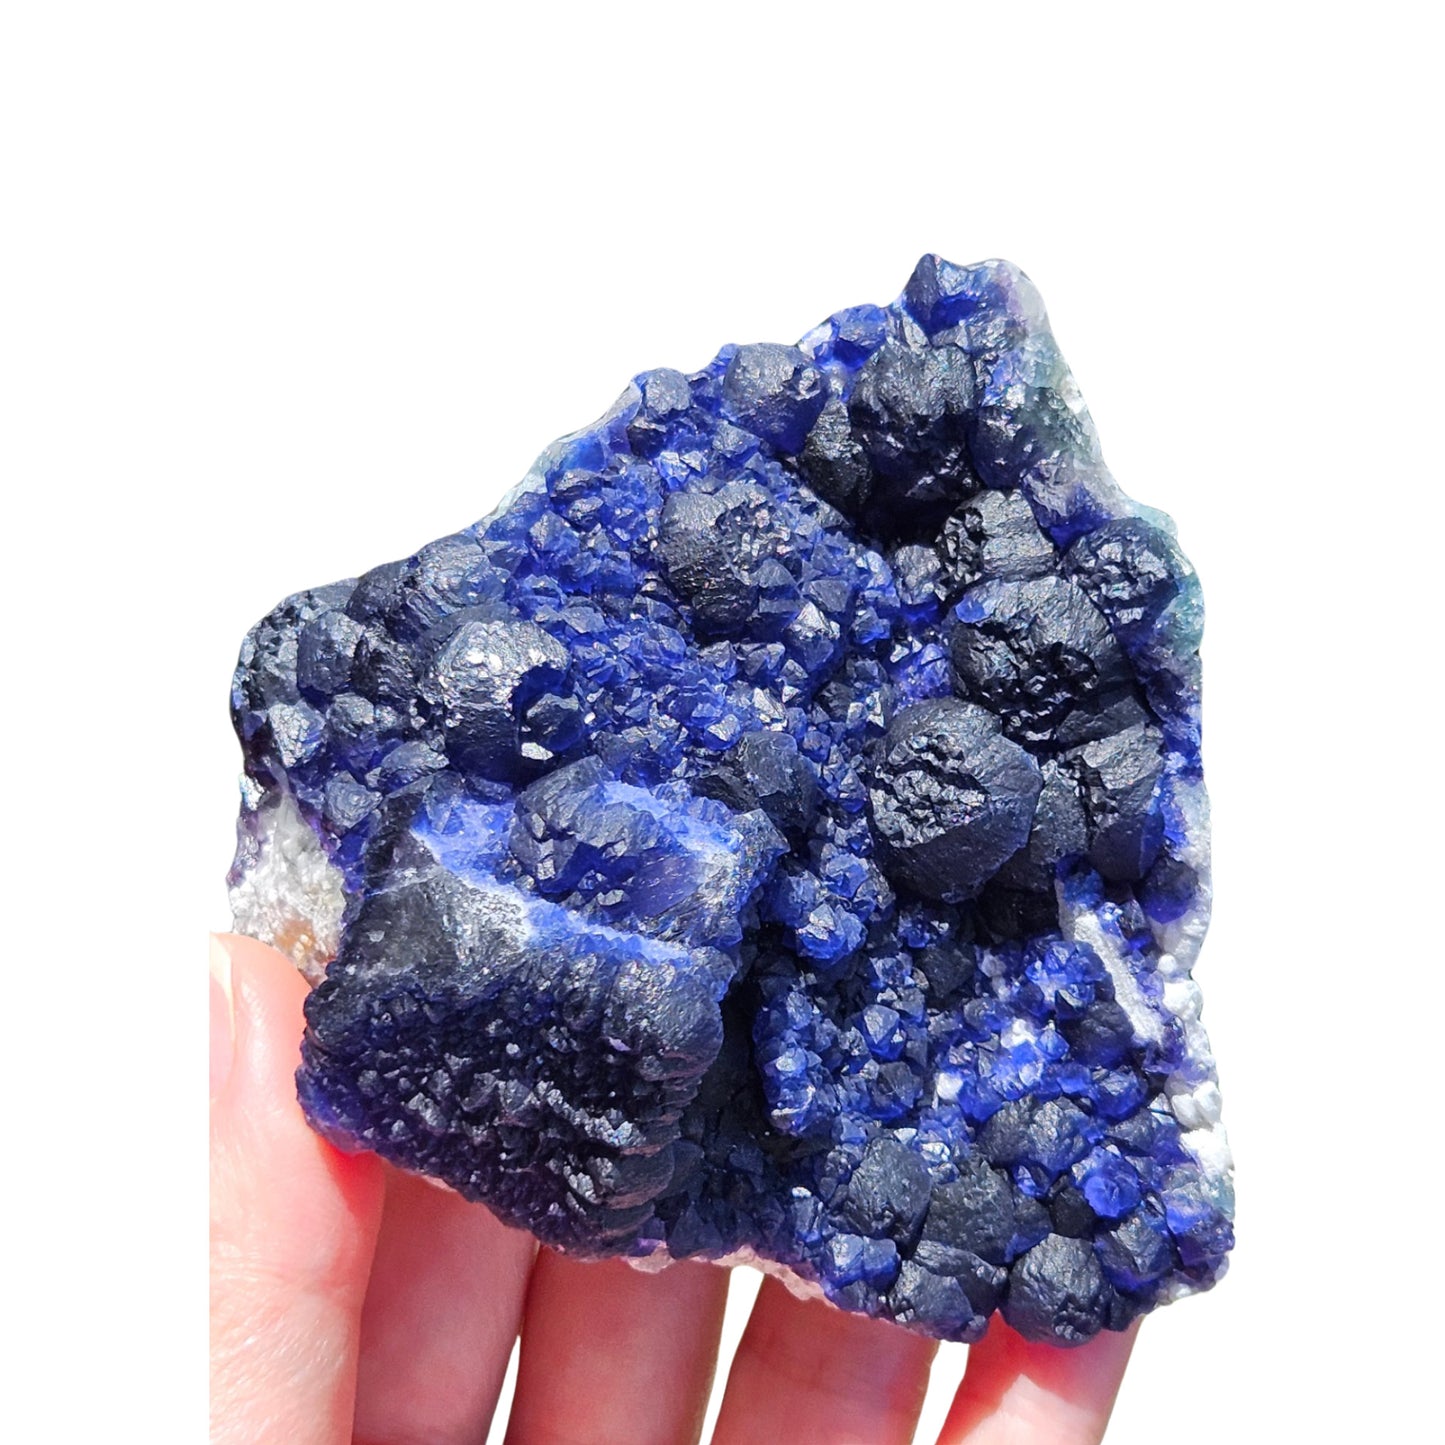 Blue Fluorite Cluster (Blueberry Fluorite)